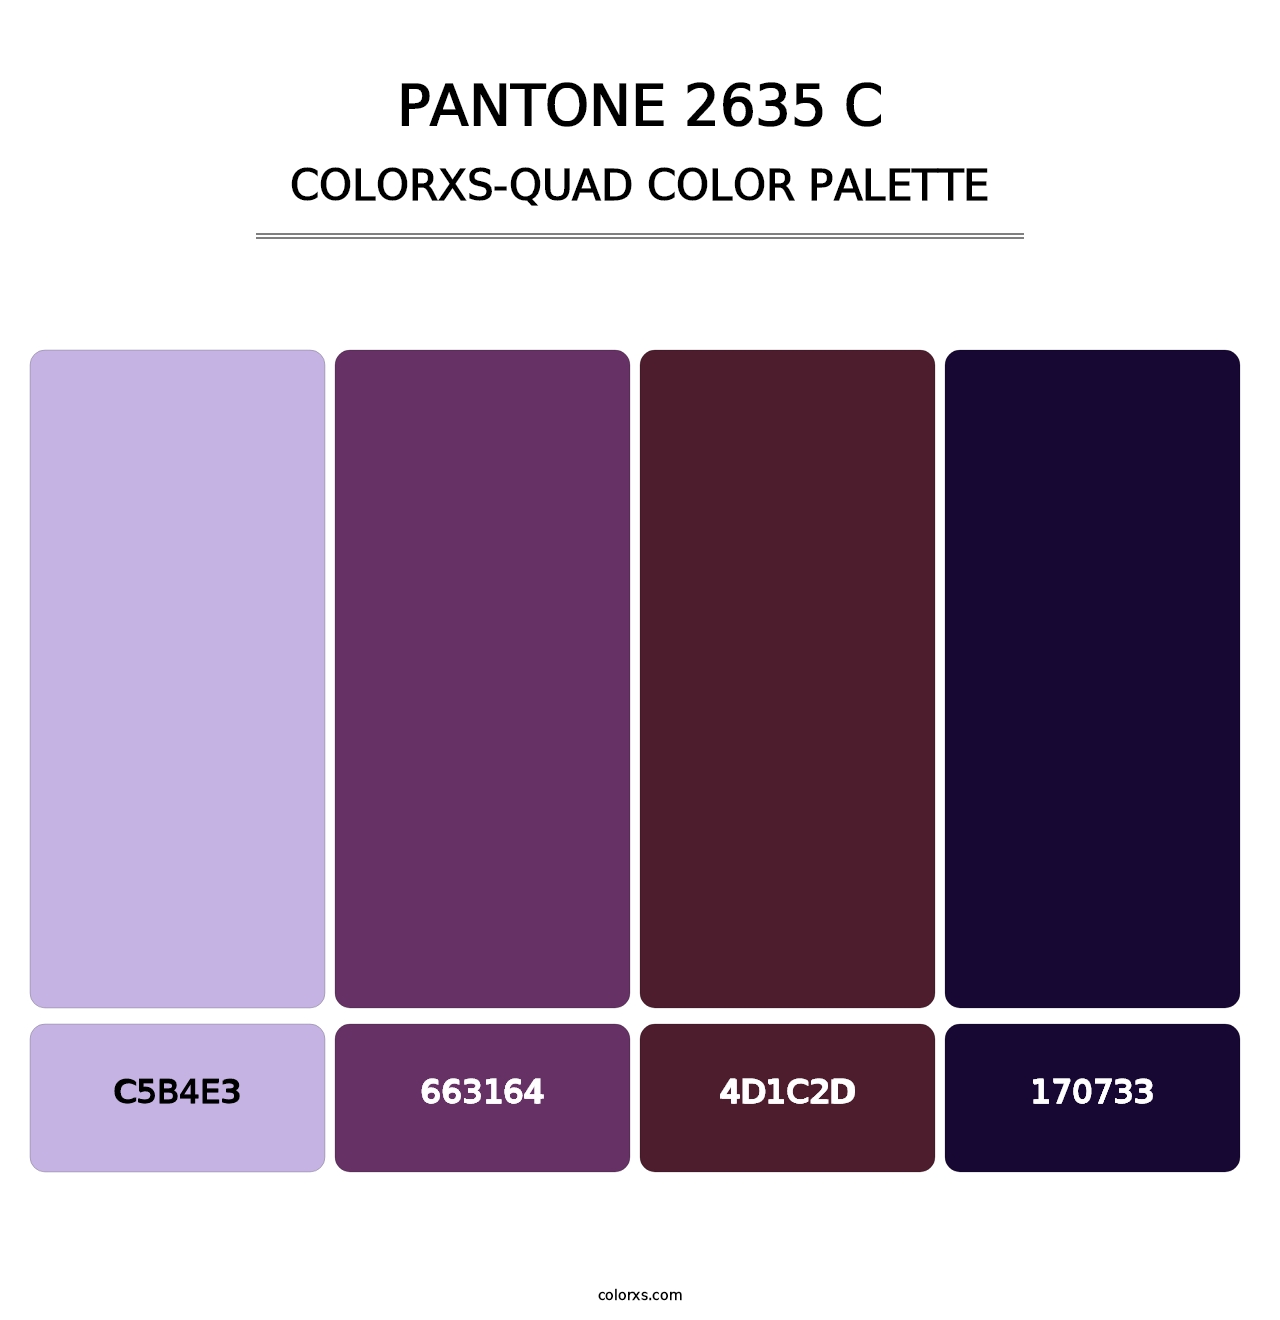 PANTONE 2635 C - Colorxs Quad Palette